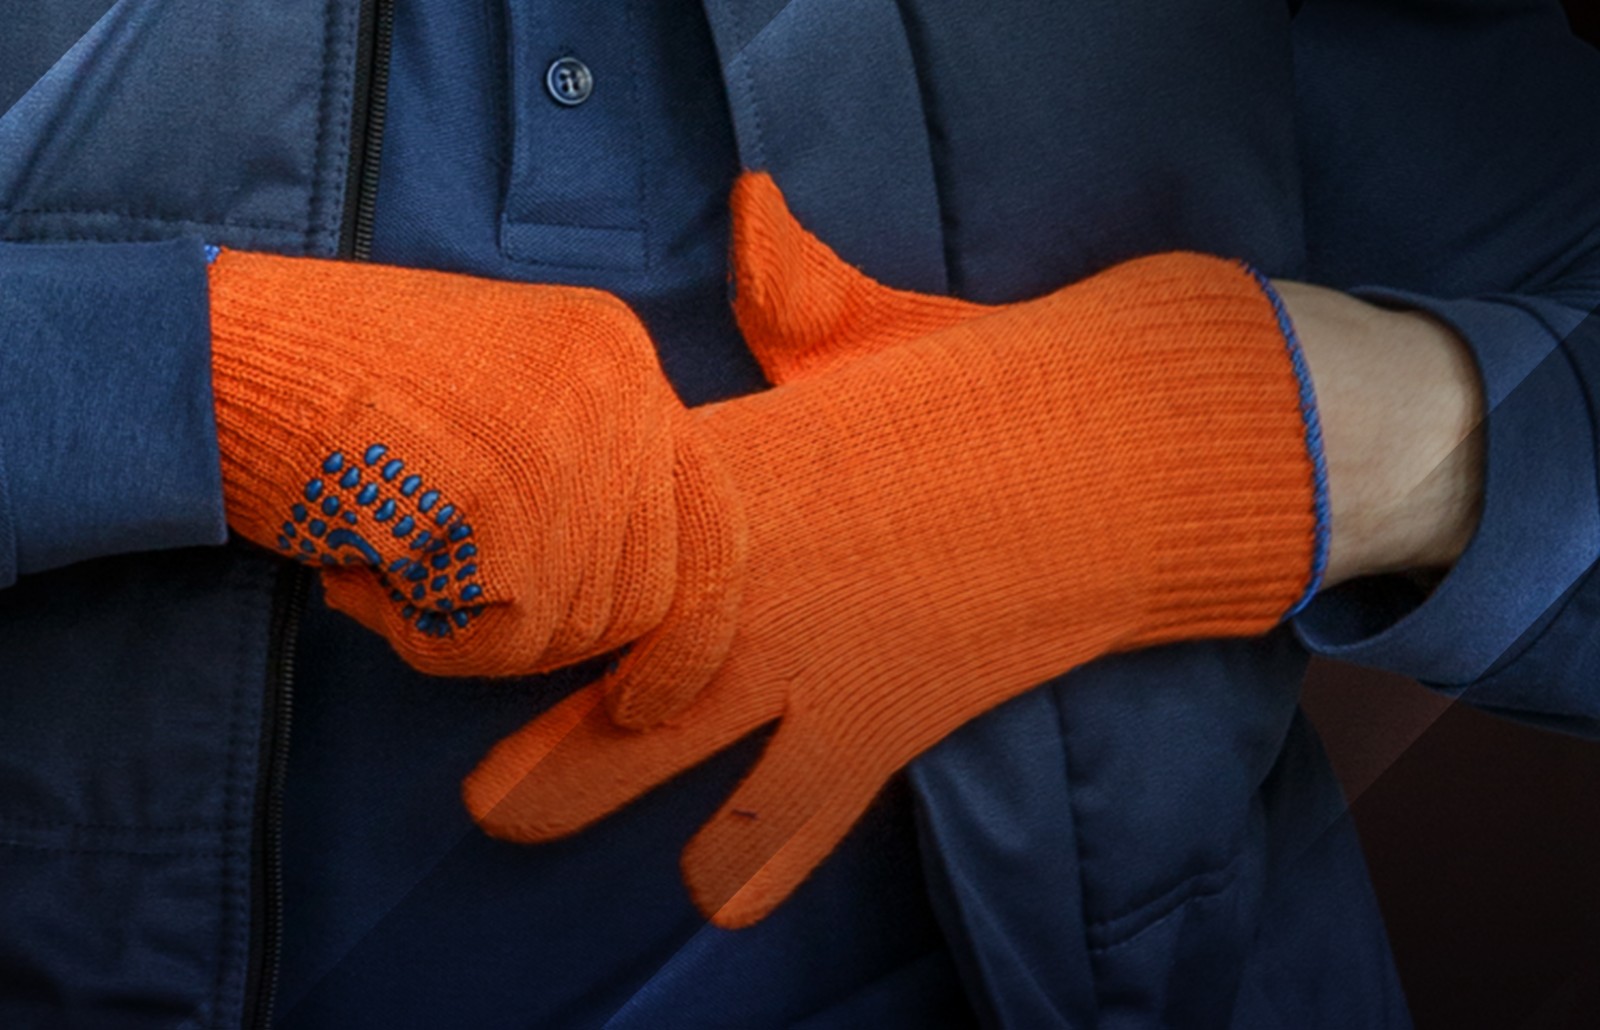 робочі рукавиці